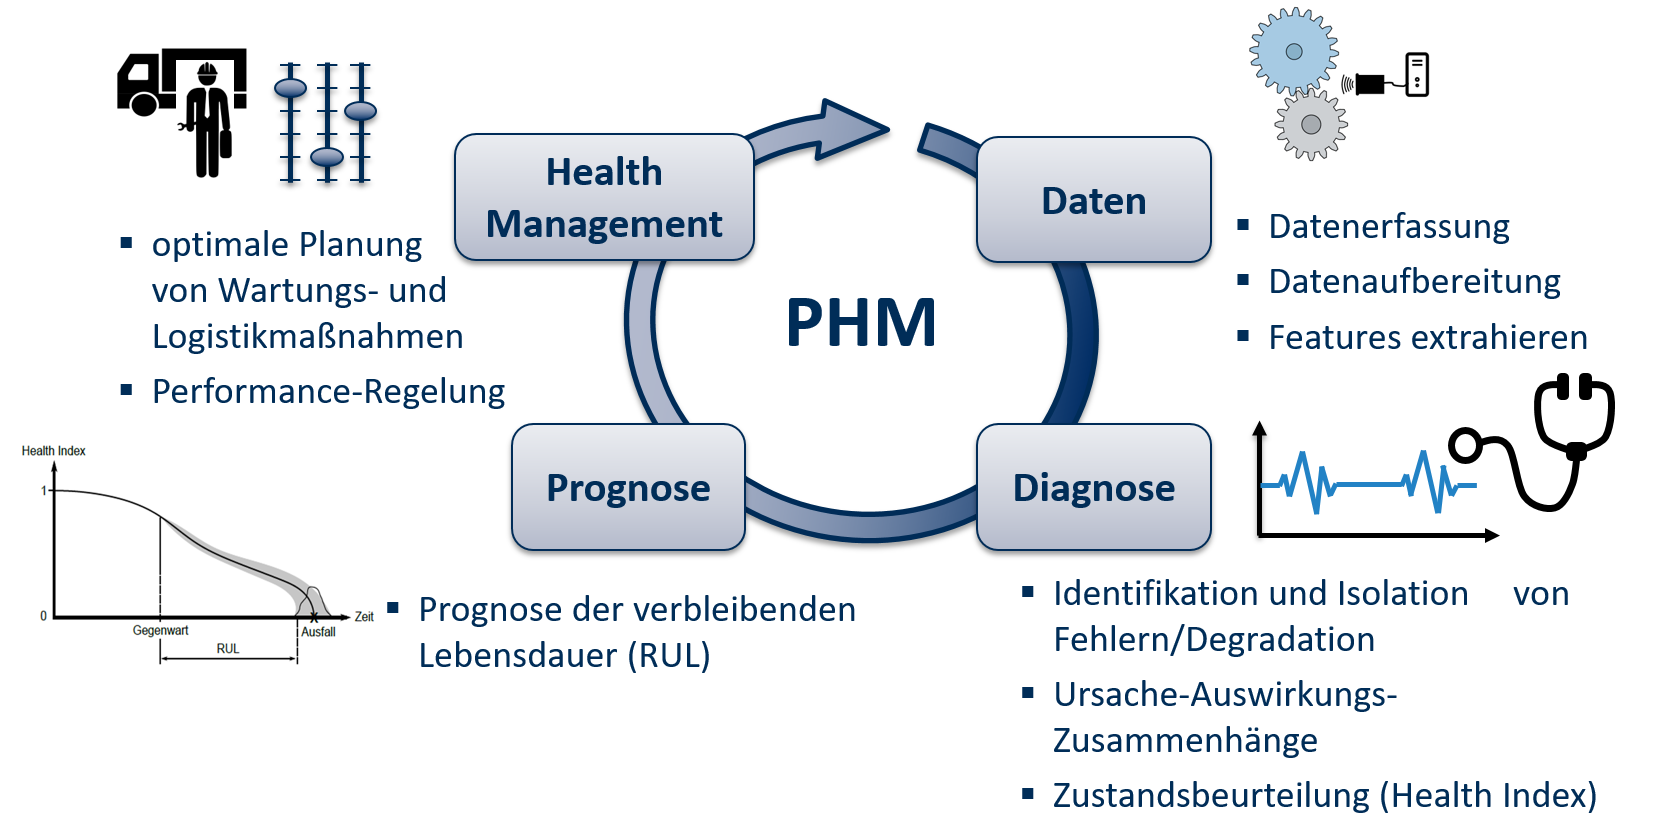 Die Grafik tellt die vier erforderlichen Schritte bei der Umsetzung einer PHM-Anwendung dar. Diese Schritte sind: Datenerfassung, Diagnose, Prognose der verbleibenden Lebensdauer und zuletzt das Health Management zur optimalen Planung von Wartungs- und Logistikmaßnahmen.